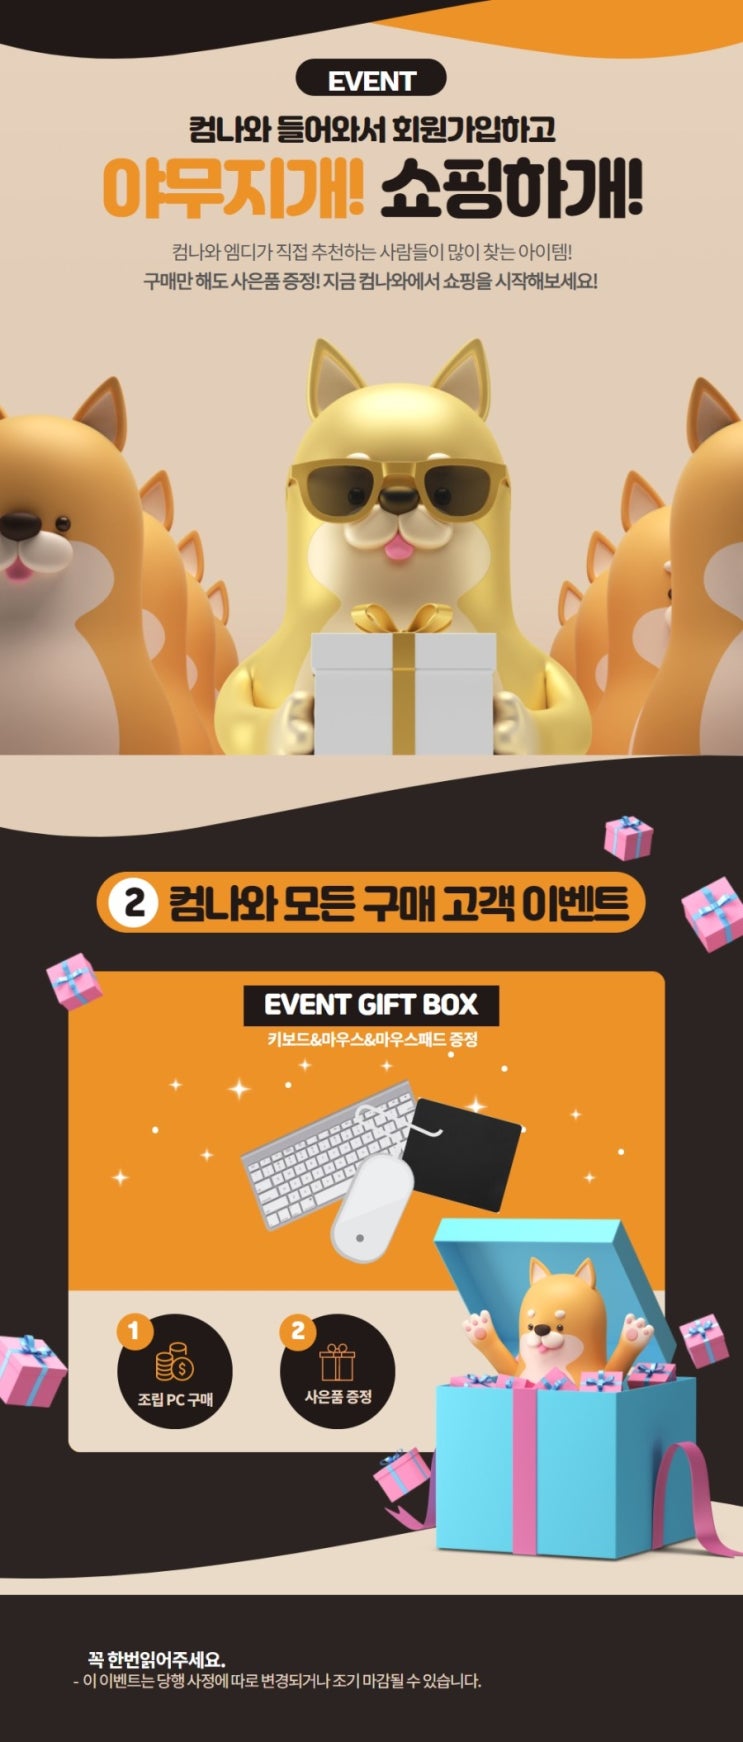 컴나와 구매 EVENT 